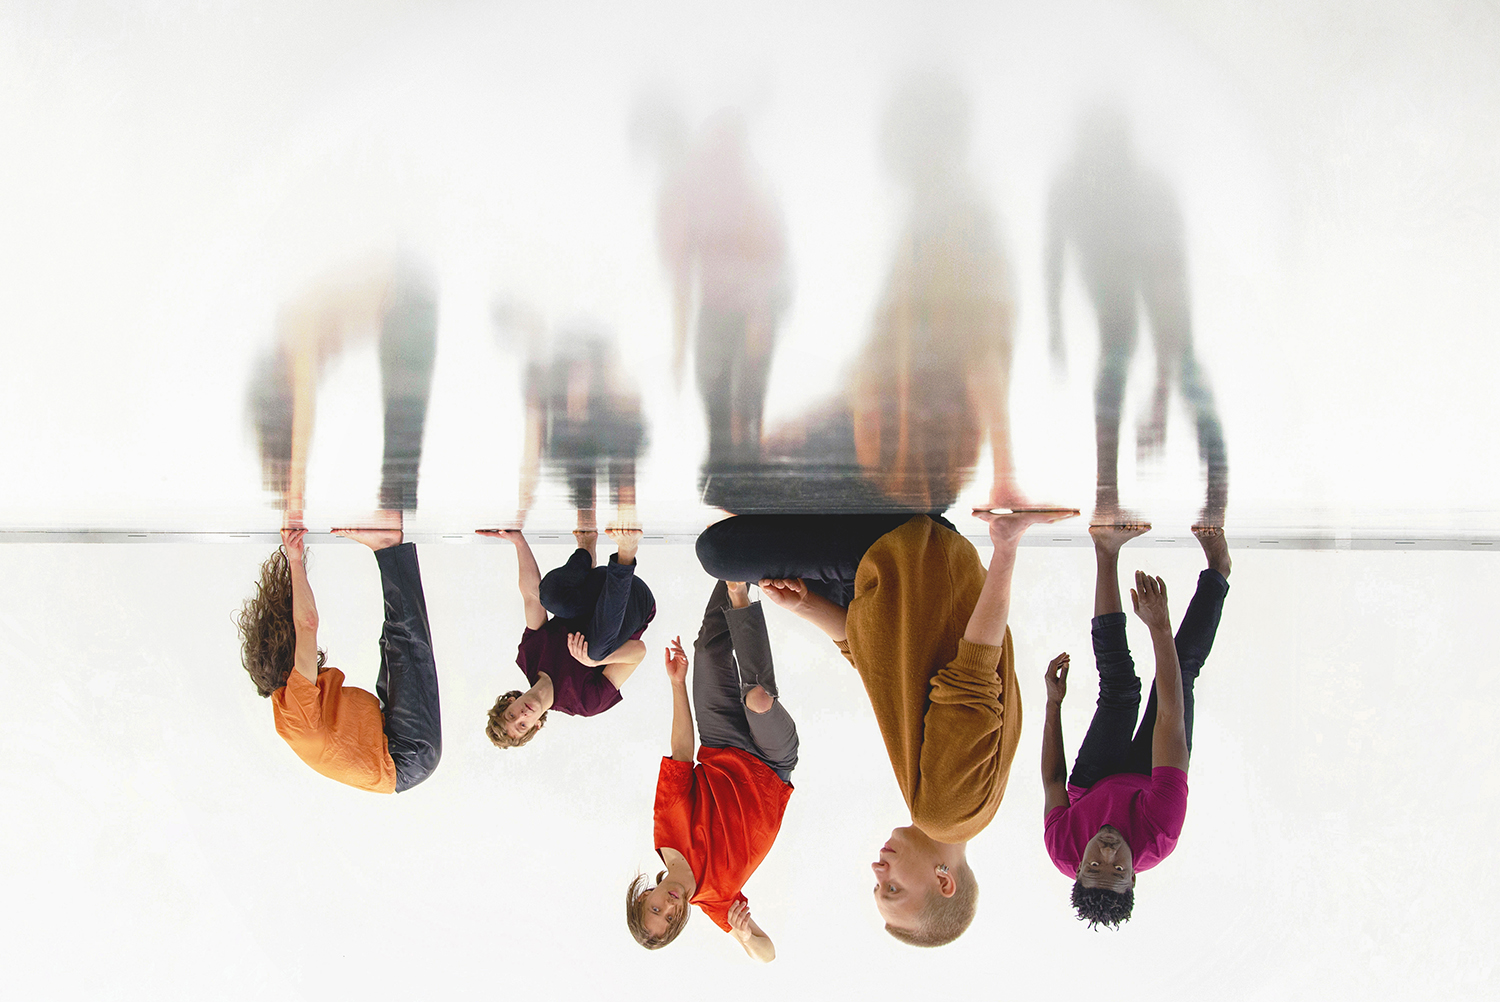 Viisi henkilö istuu ja seisoo eri asennoissa heijastavalla pinnalla ylösalaisin olevassa kuvassa. oel